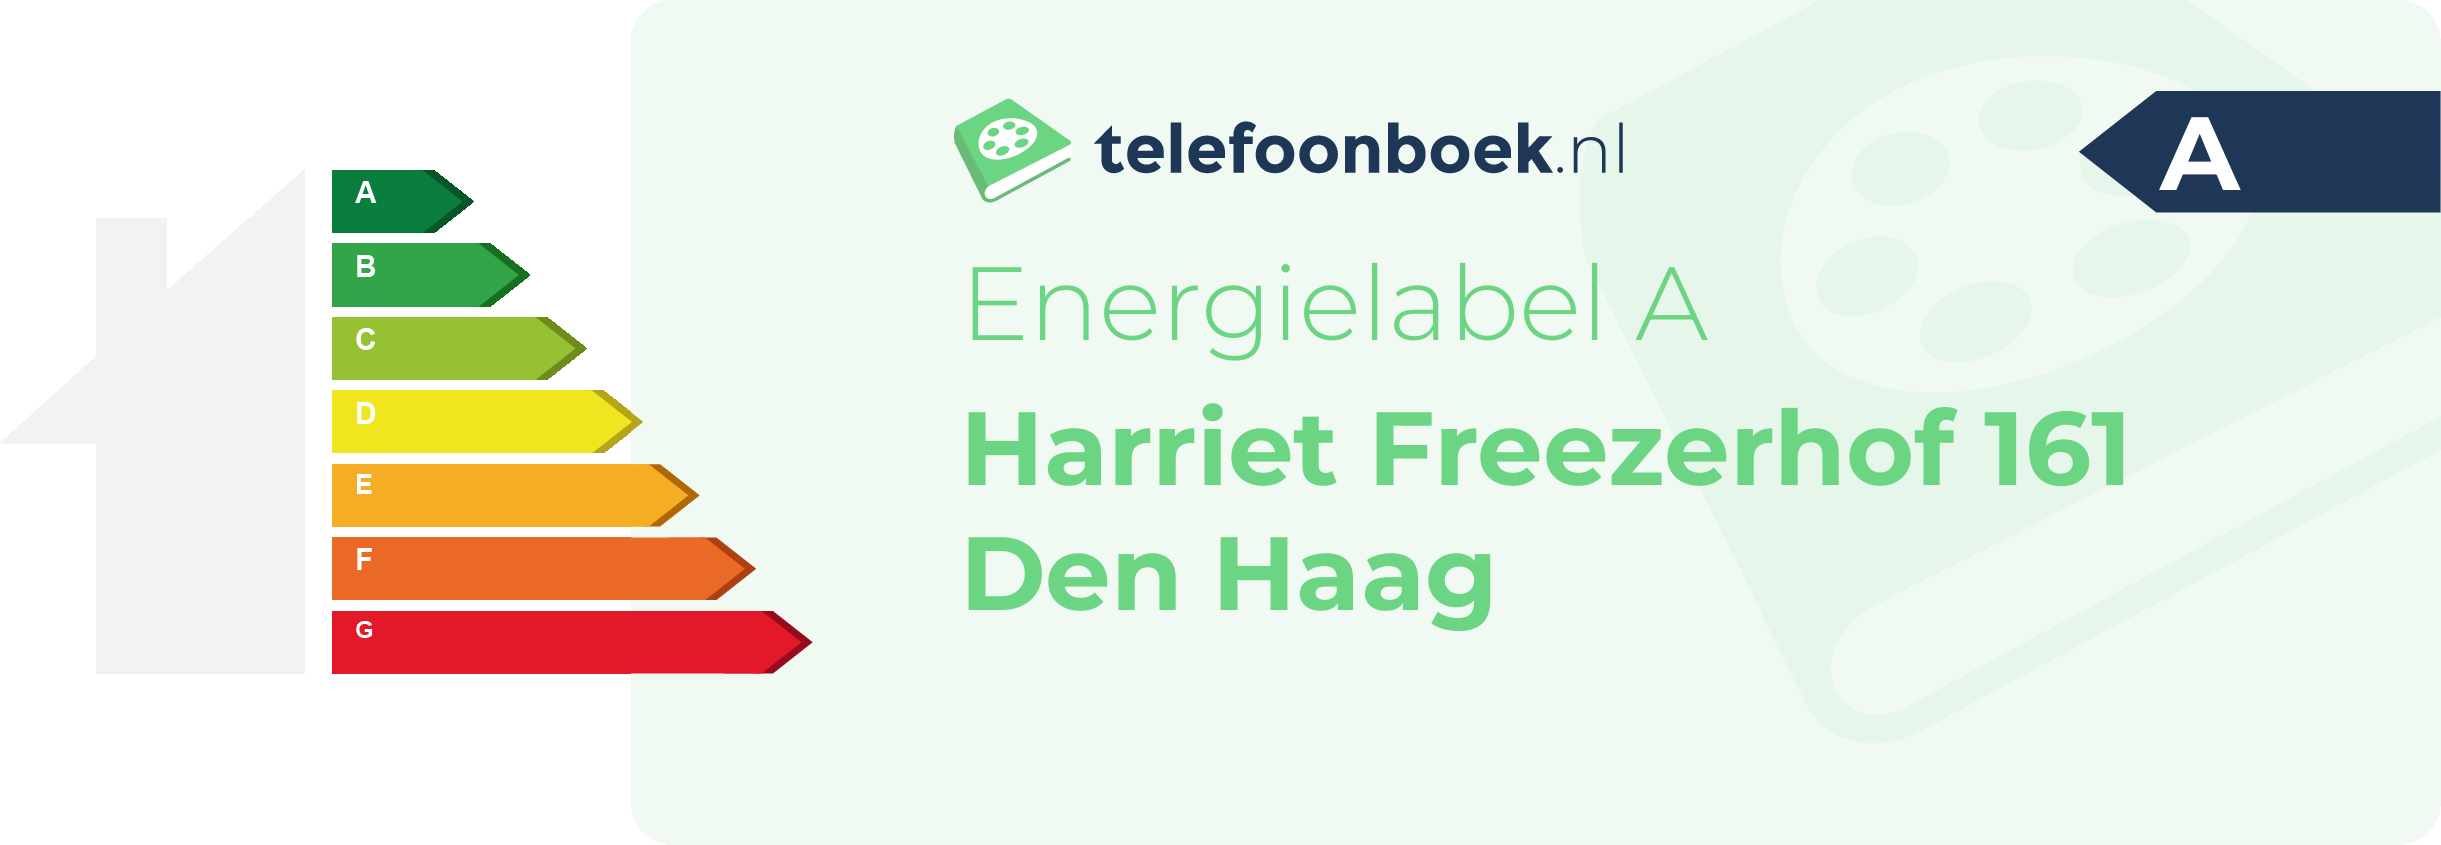 Energielabel Harriet Freezerhof 161 Den Haag